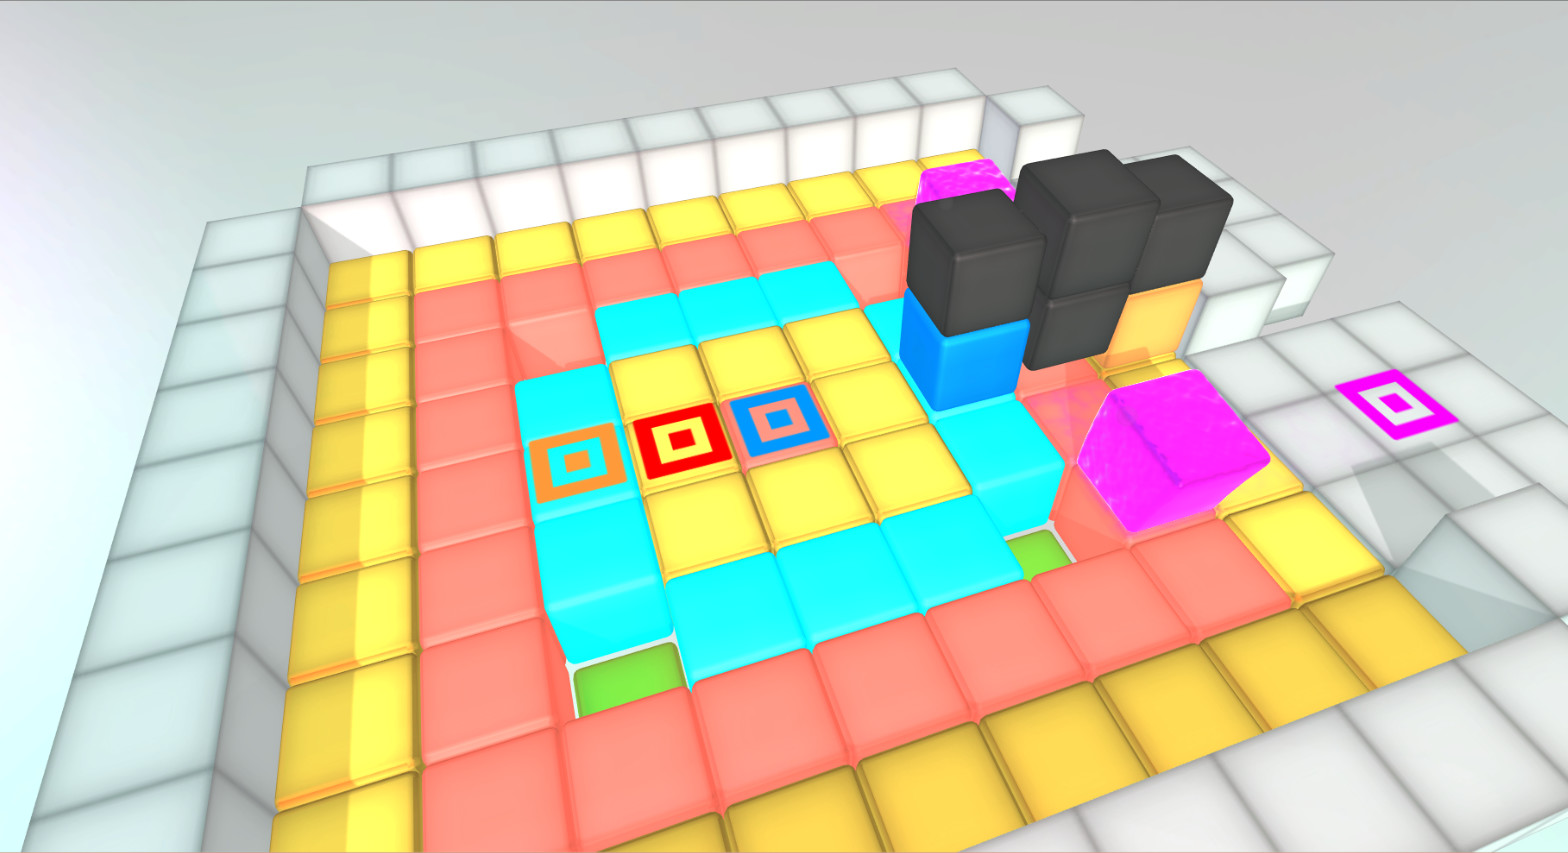 GOOCUBELETS 2. Игры типа кубика. Lively Cubes похожие игры. Cube похожие игры. Игры типа кубиков